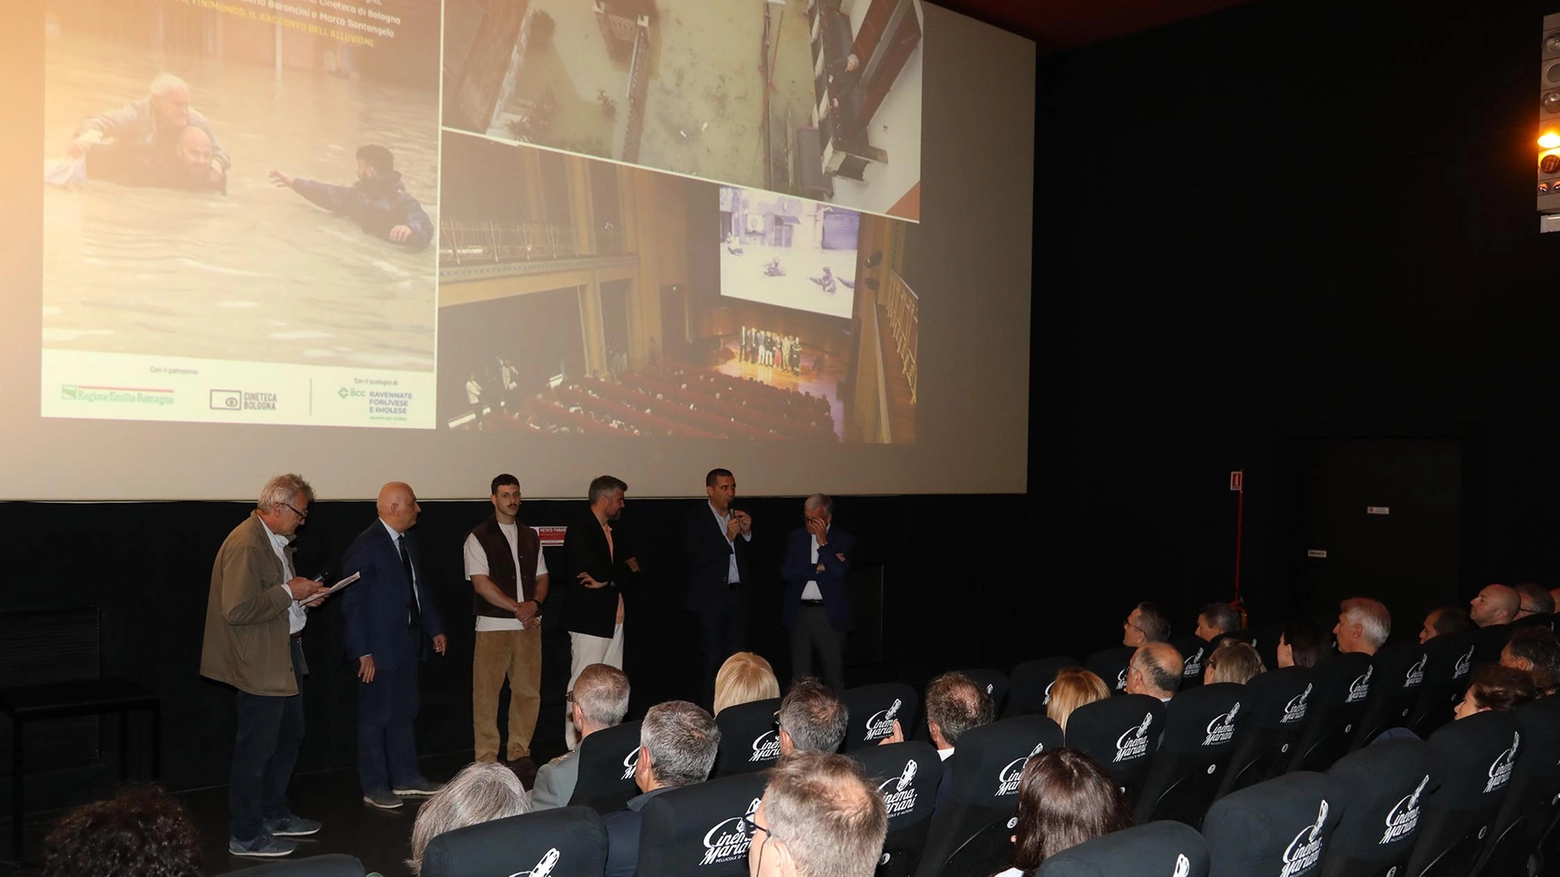 La presentazione del docufilm 'Ho visto il finimondo' al cinema Mariani di Ravenna (Foto Corelli)